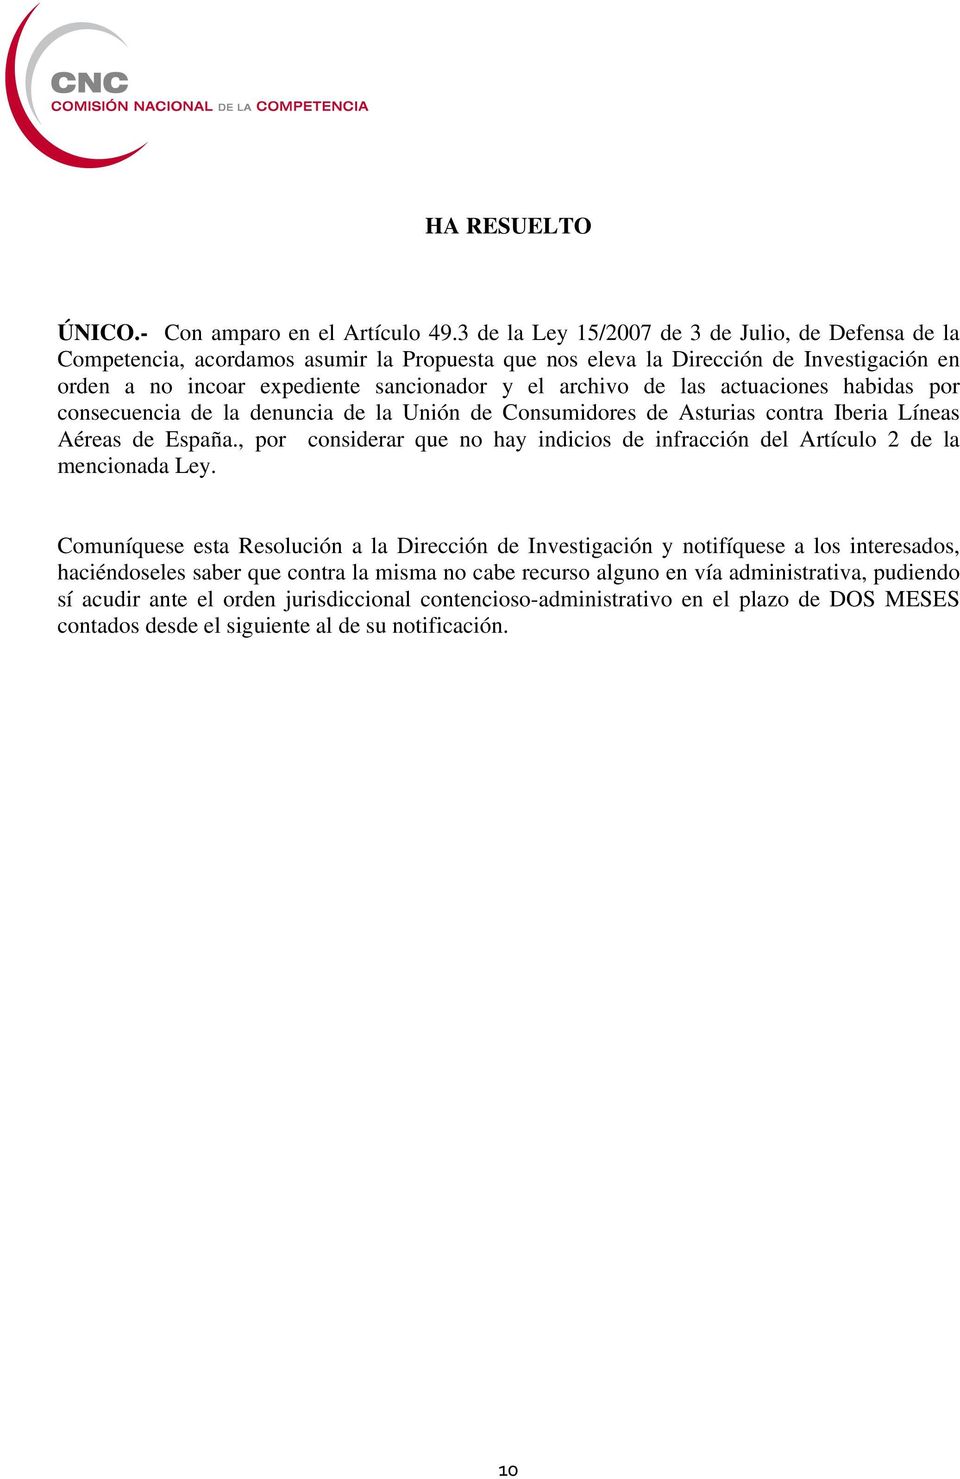 las actuaciones habidas por consecuencia de la denuncia de la Unión de Consumidores de Asturias contra Iberia Líneas Aéreas de España.